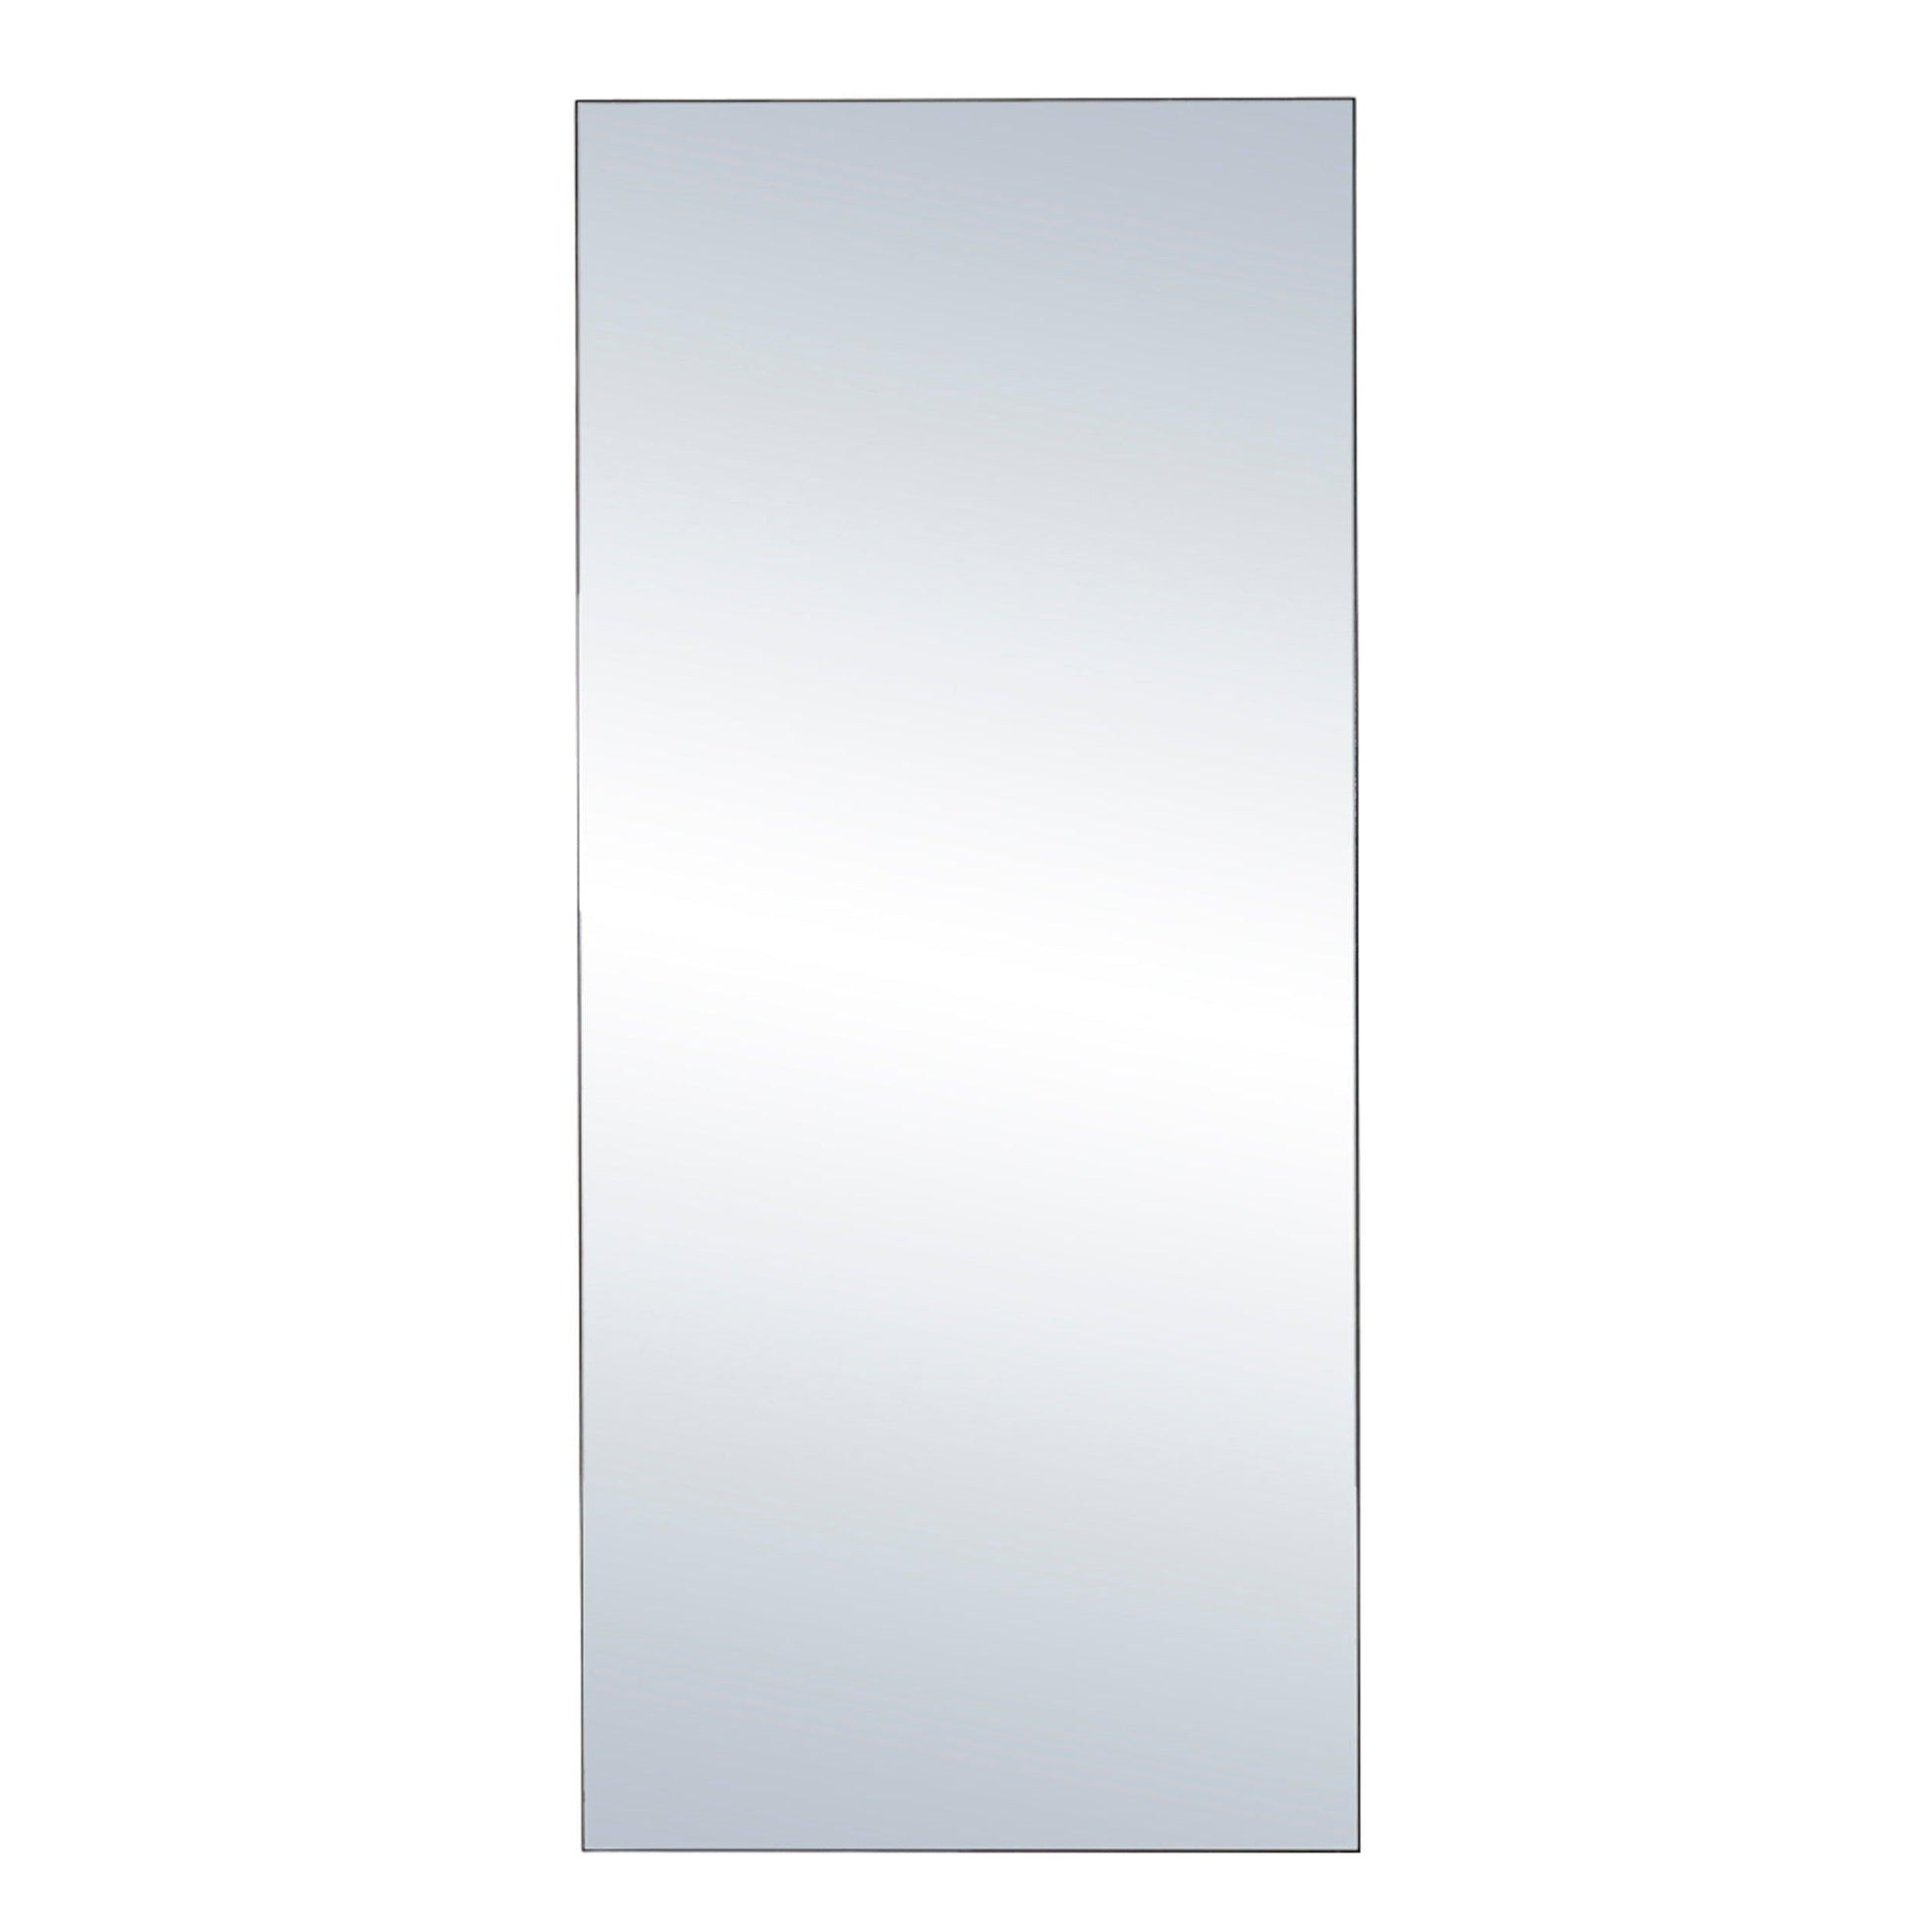 Rectangular Metal Mirror